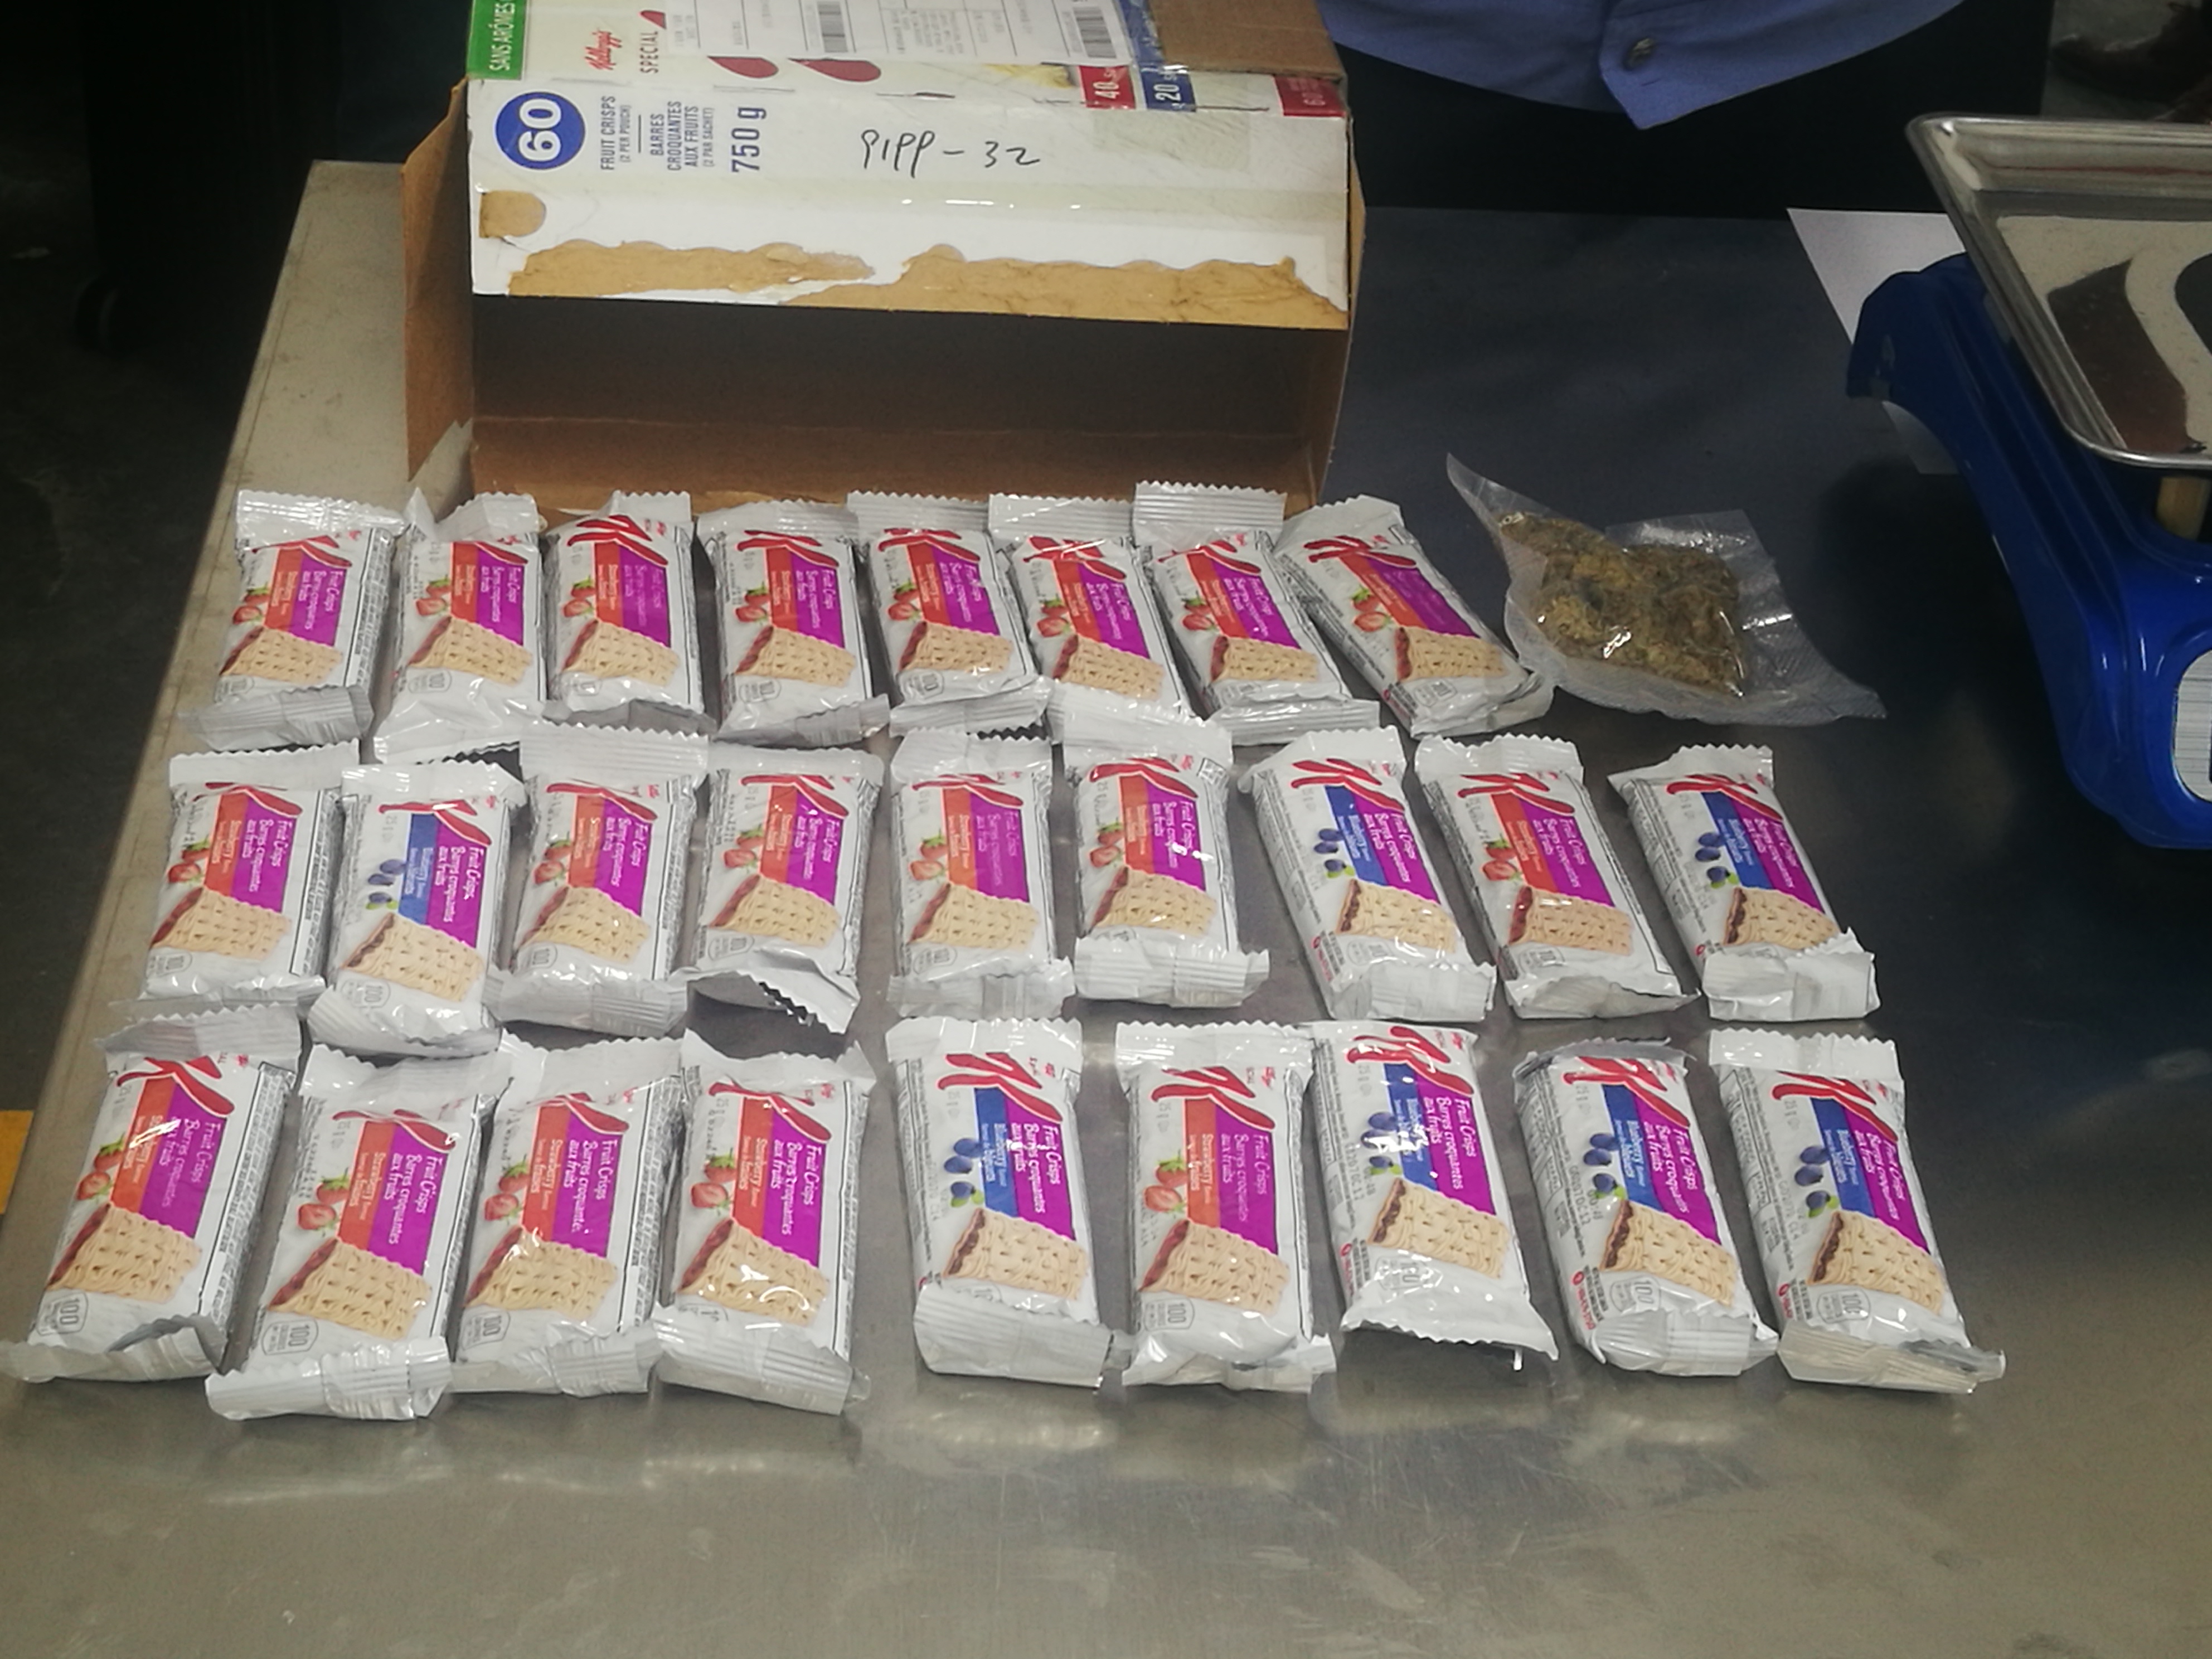 カナダから発送された速達小包に麻薬 中国・黄埔税関が摘発